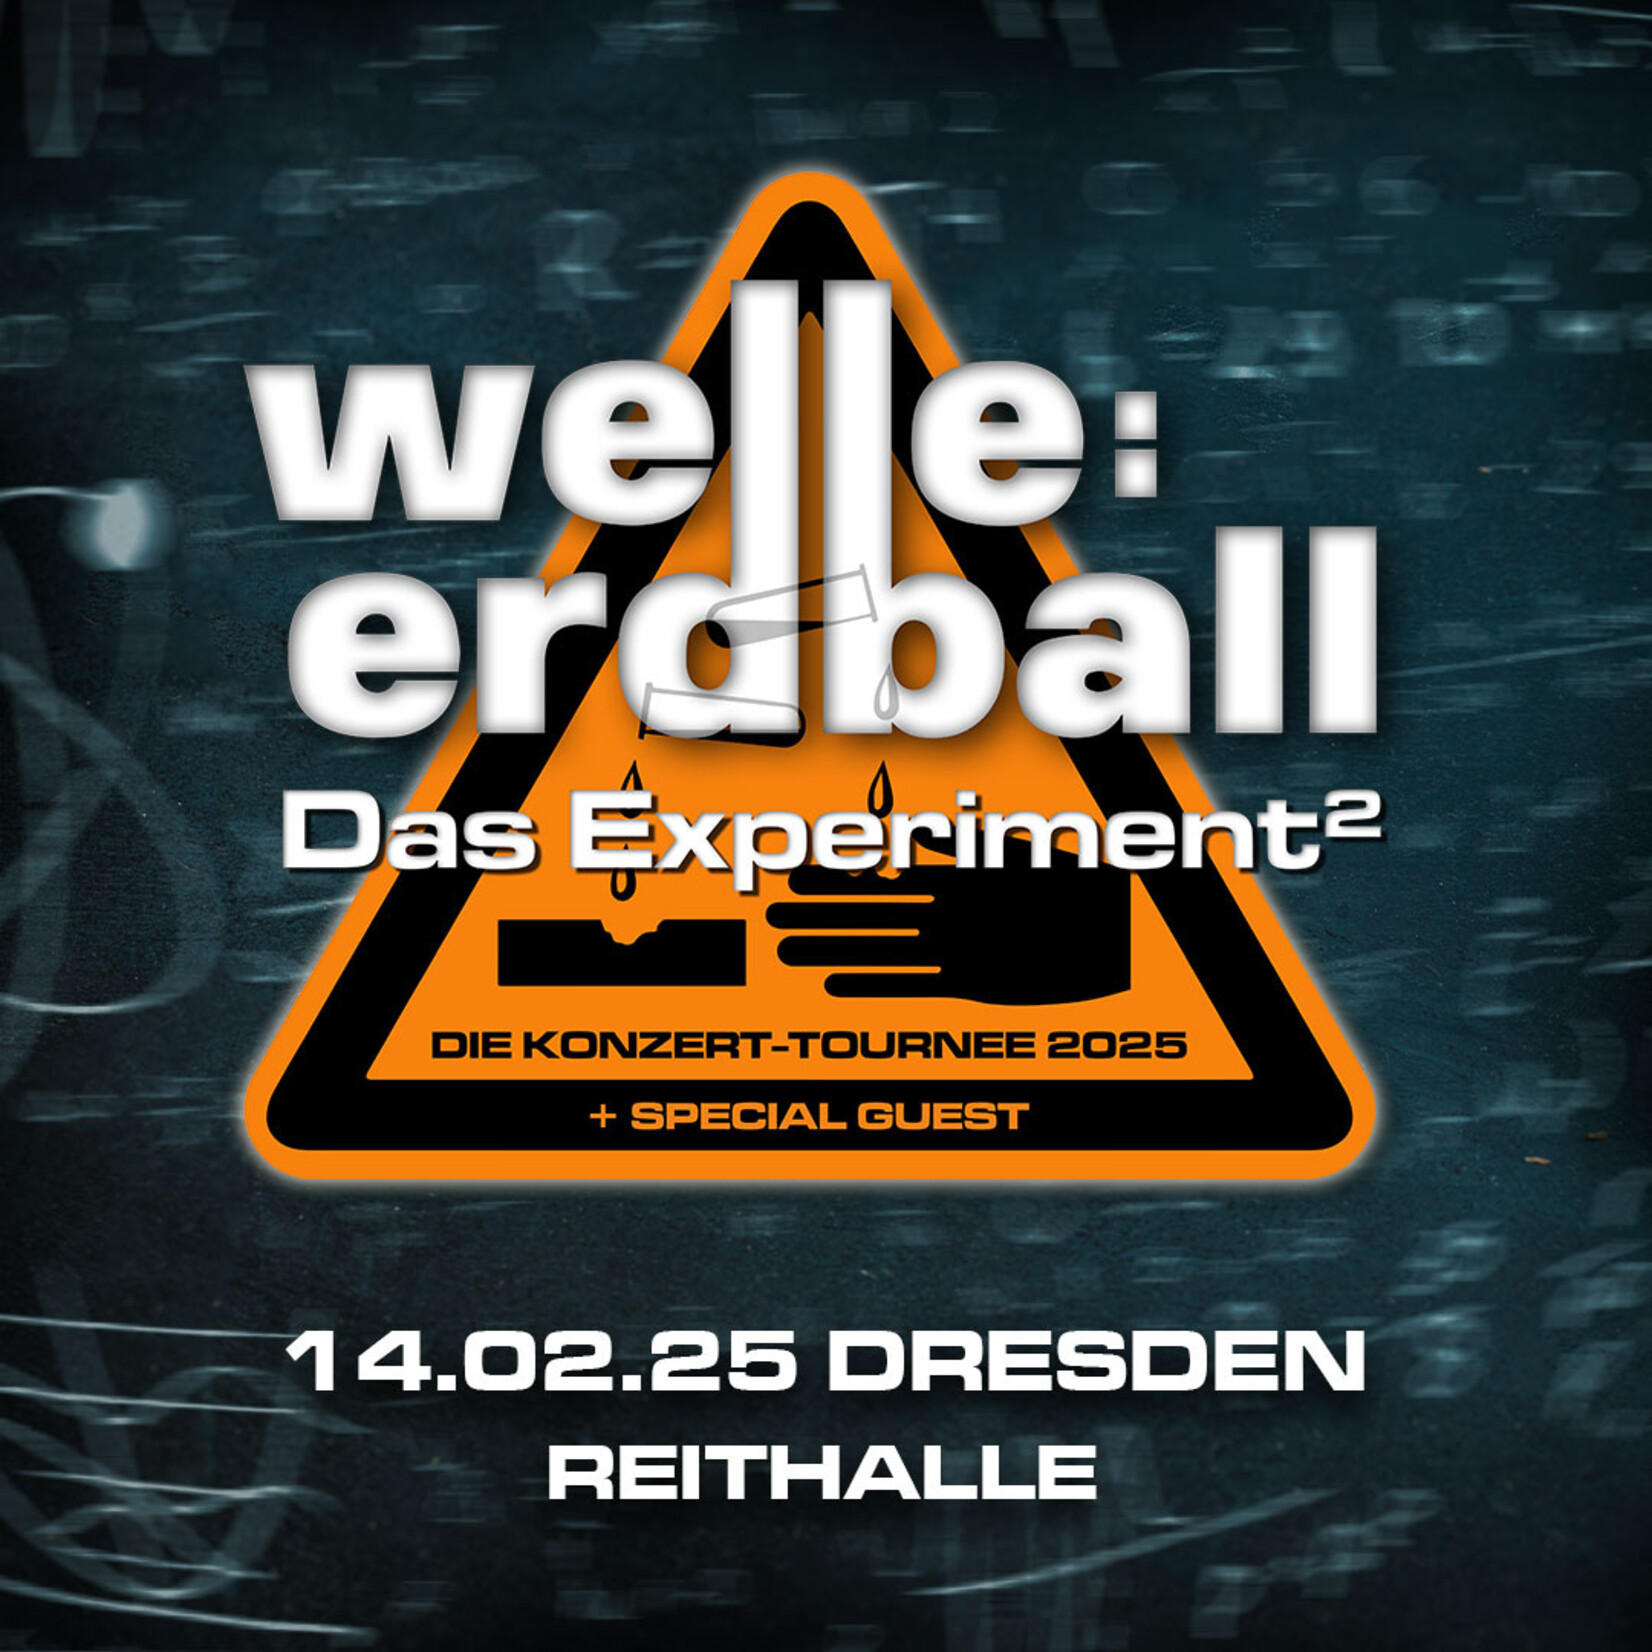 14.02.2025 - DRESDEN - WELLE:ERDBALL - DAS EXPERIMENT²